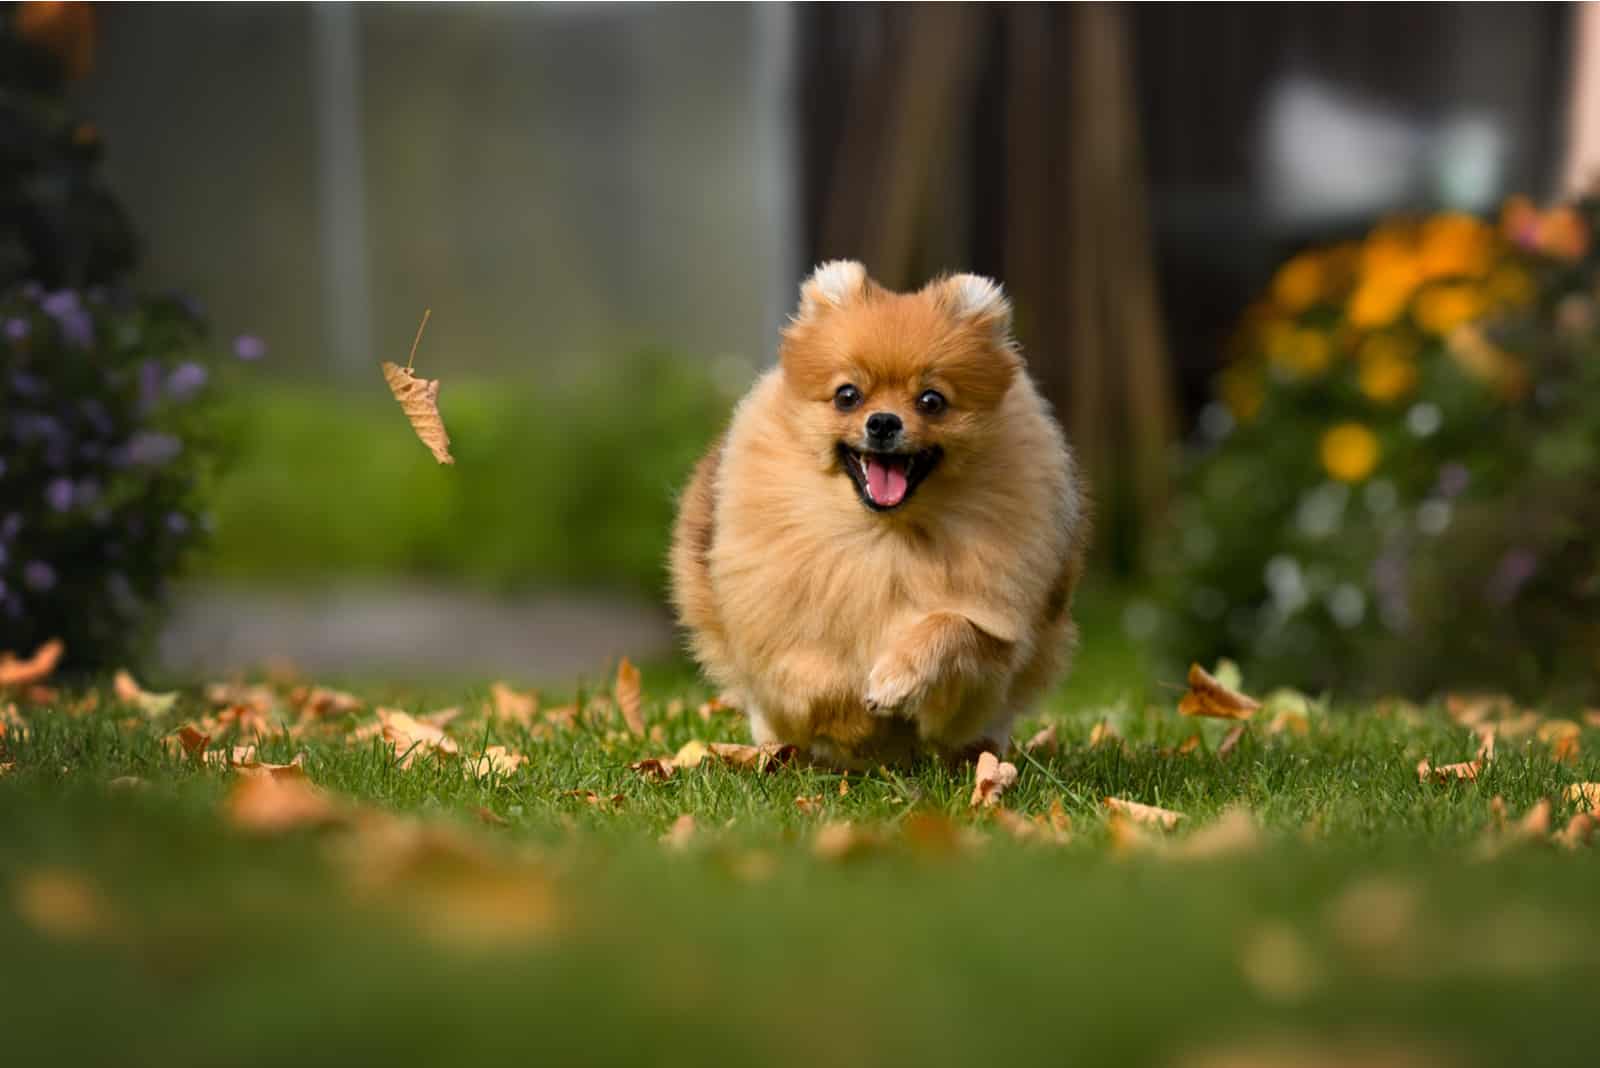 Pomeranian running on grass